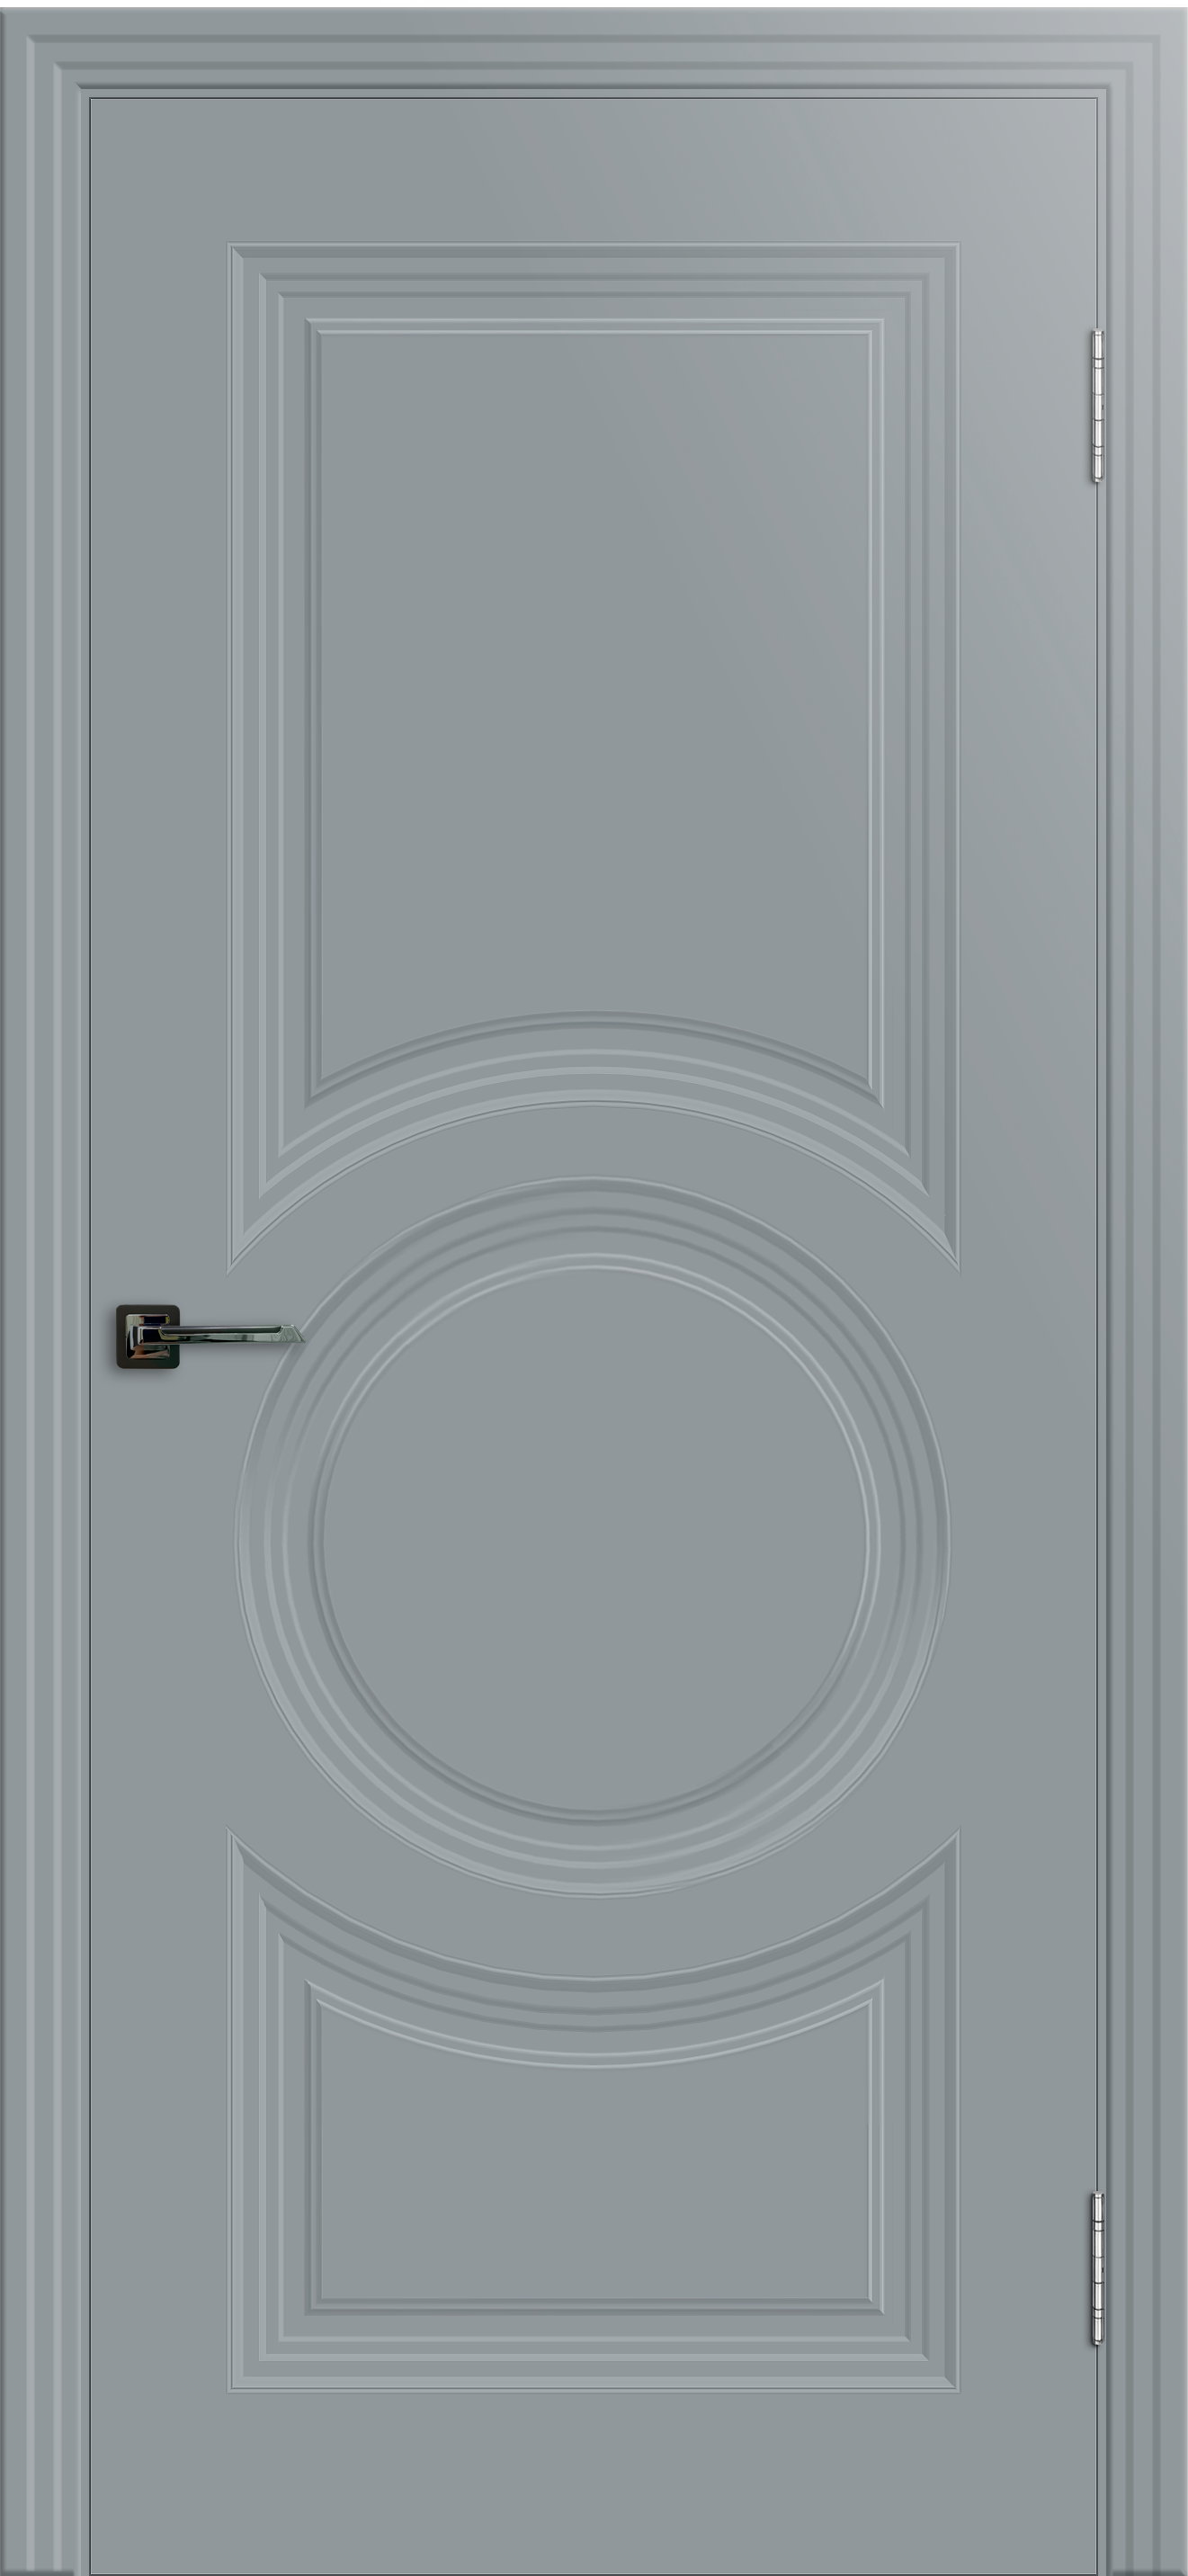 Межкомнатная дверь «SHELLY 8». Вид отделки Белая эмаль Cтандартный наличник